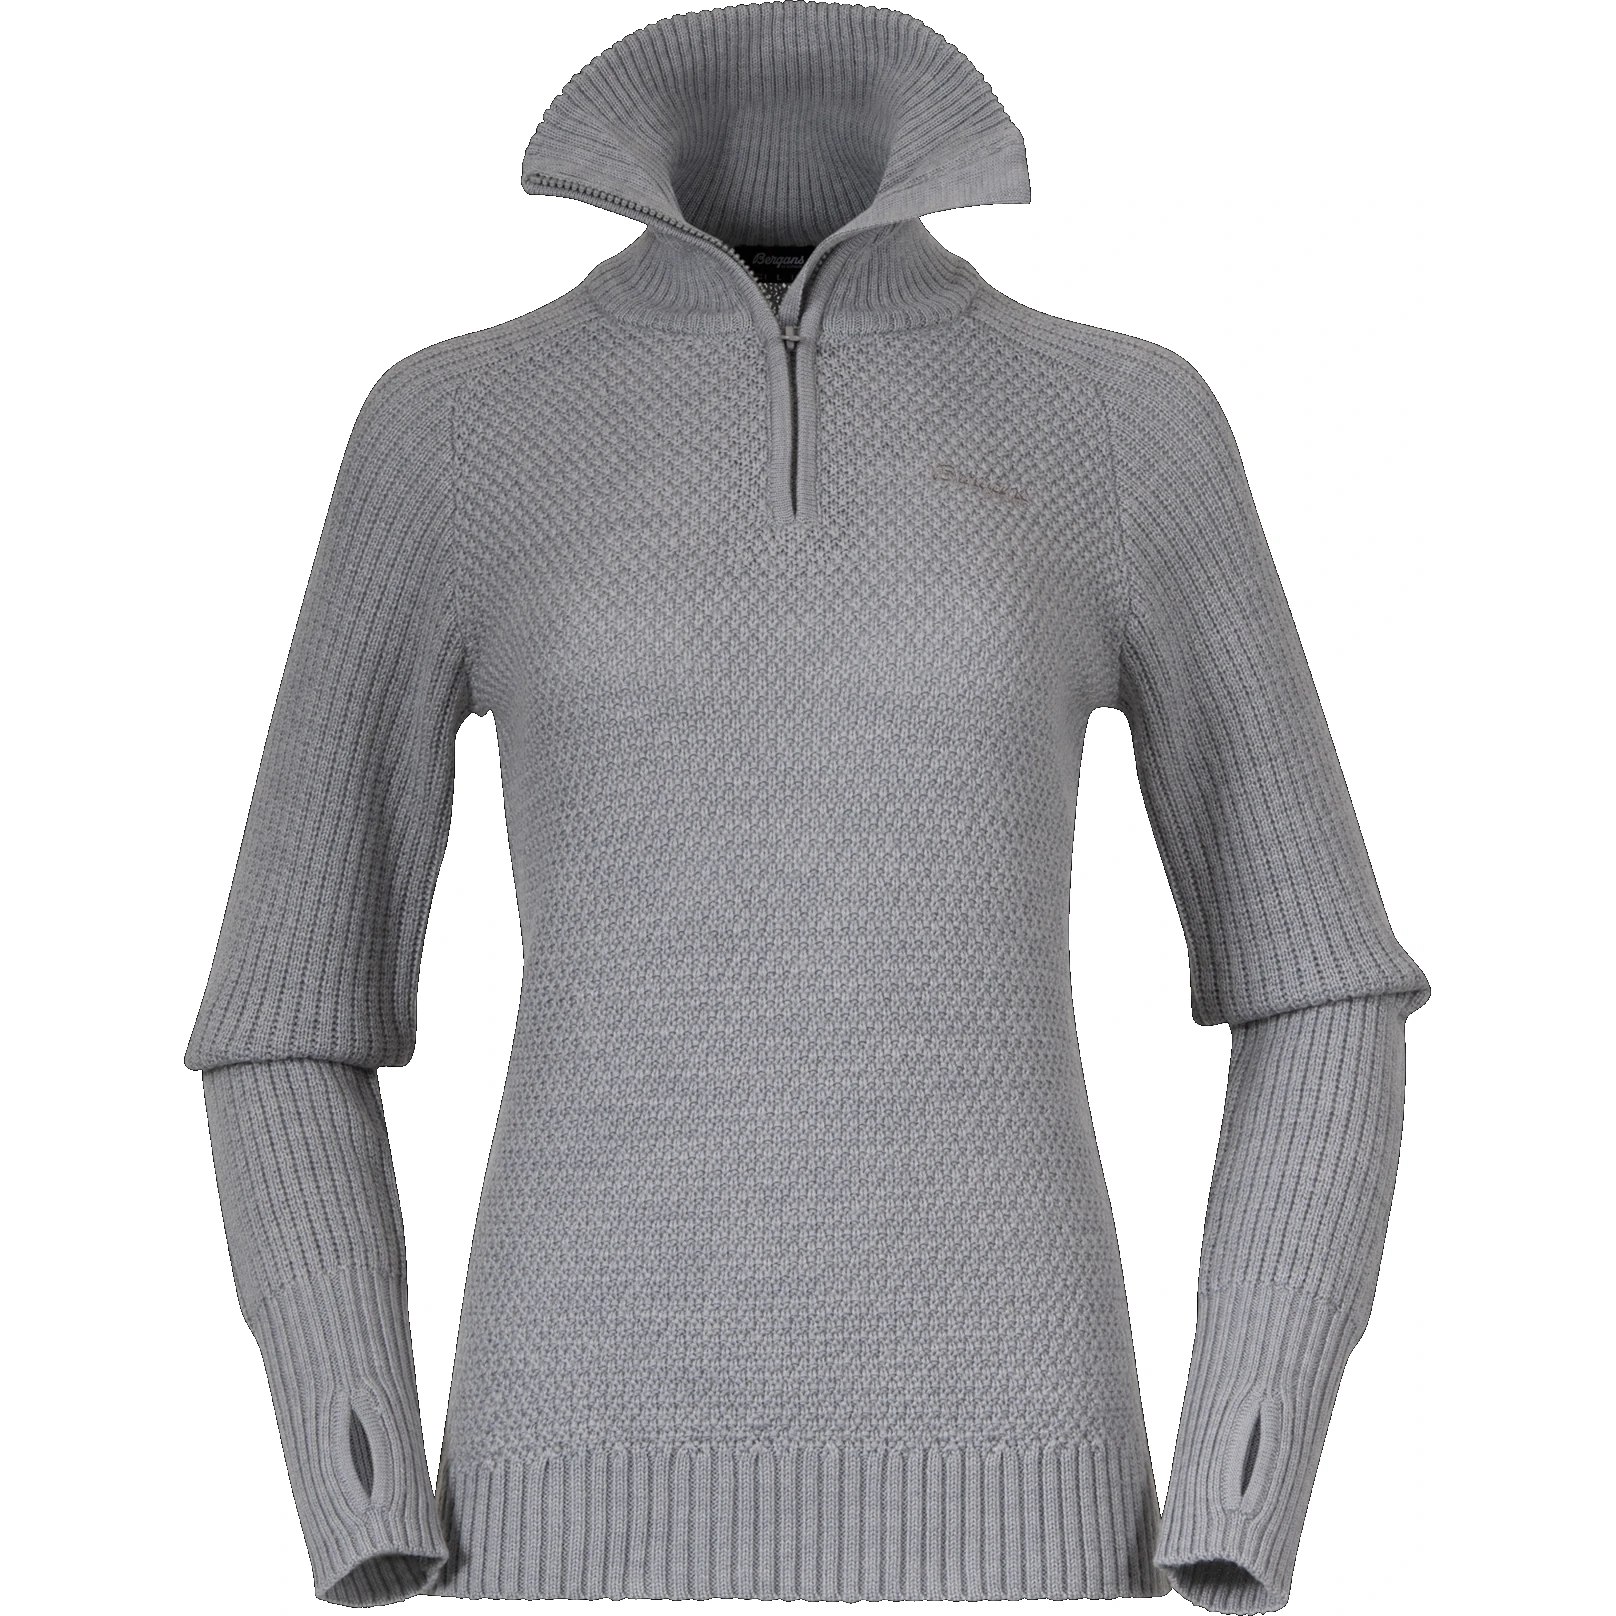 Produktbild von Bergans Ulriken Jumper Pullover Damen - magnesium grey